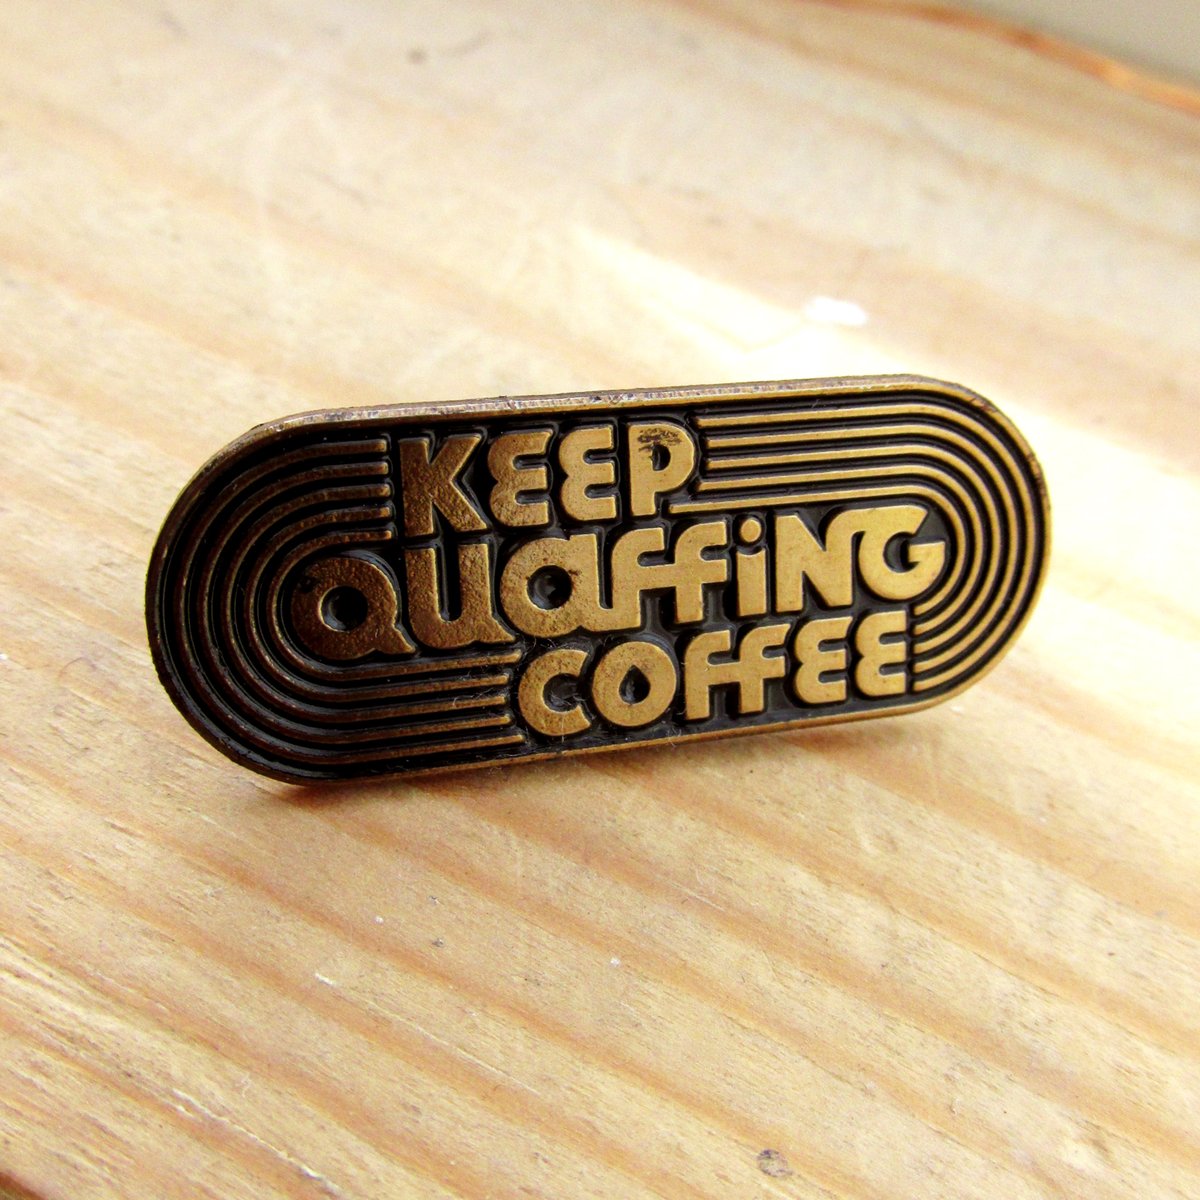 Keep Quaffing Coffee